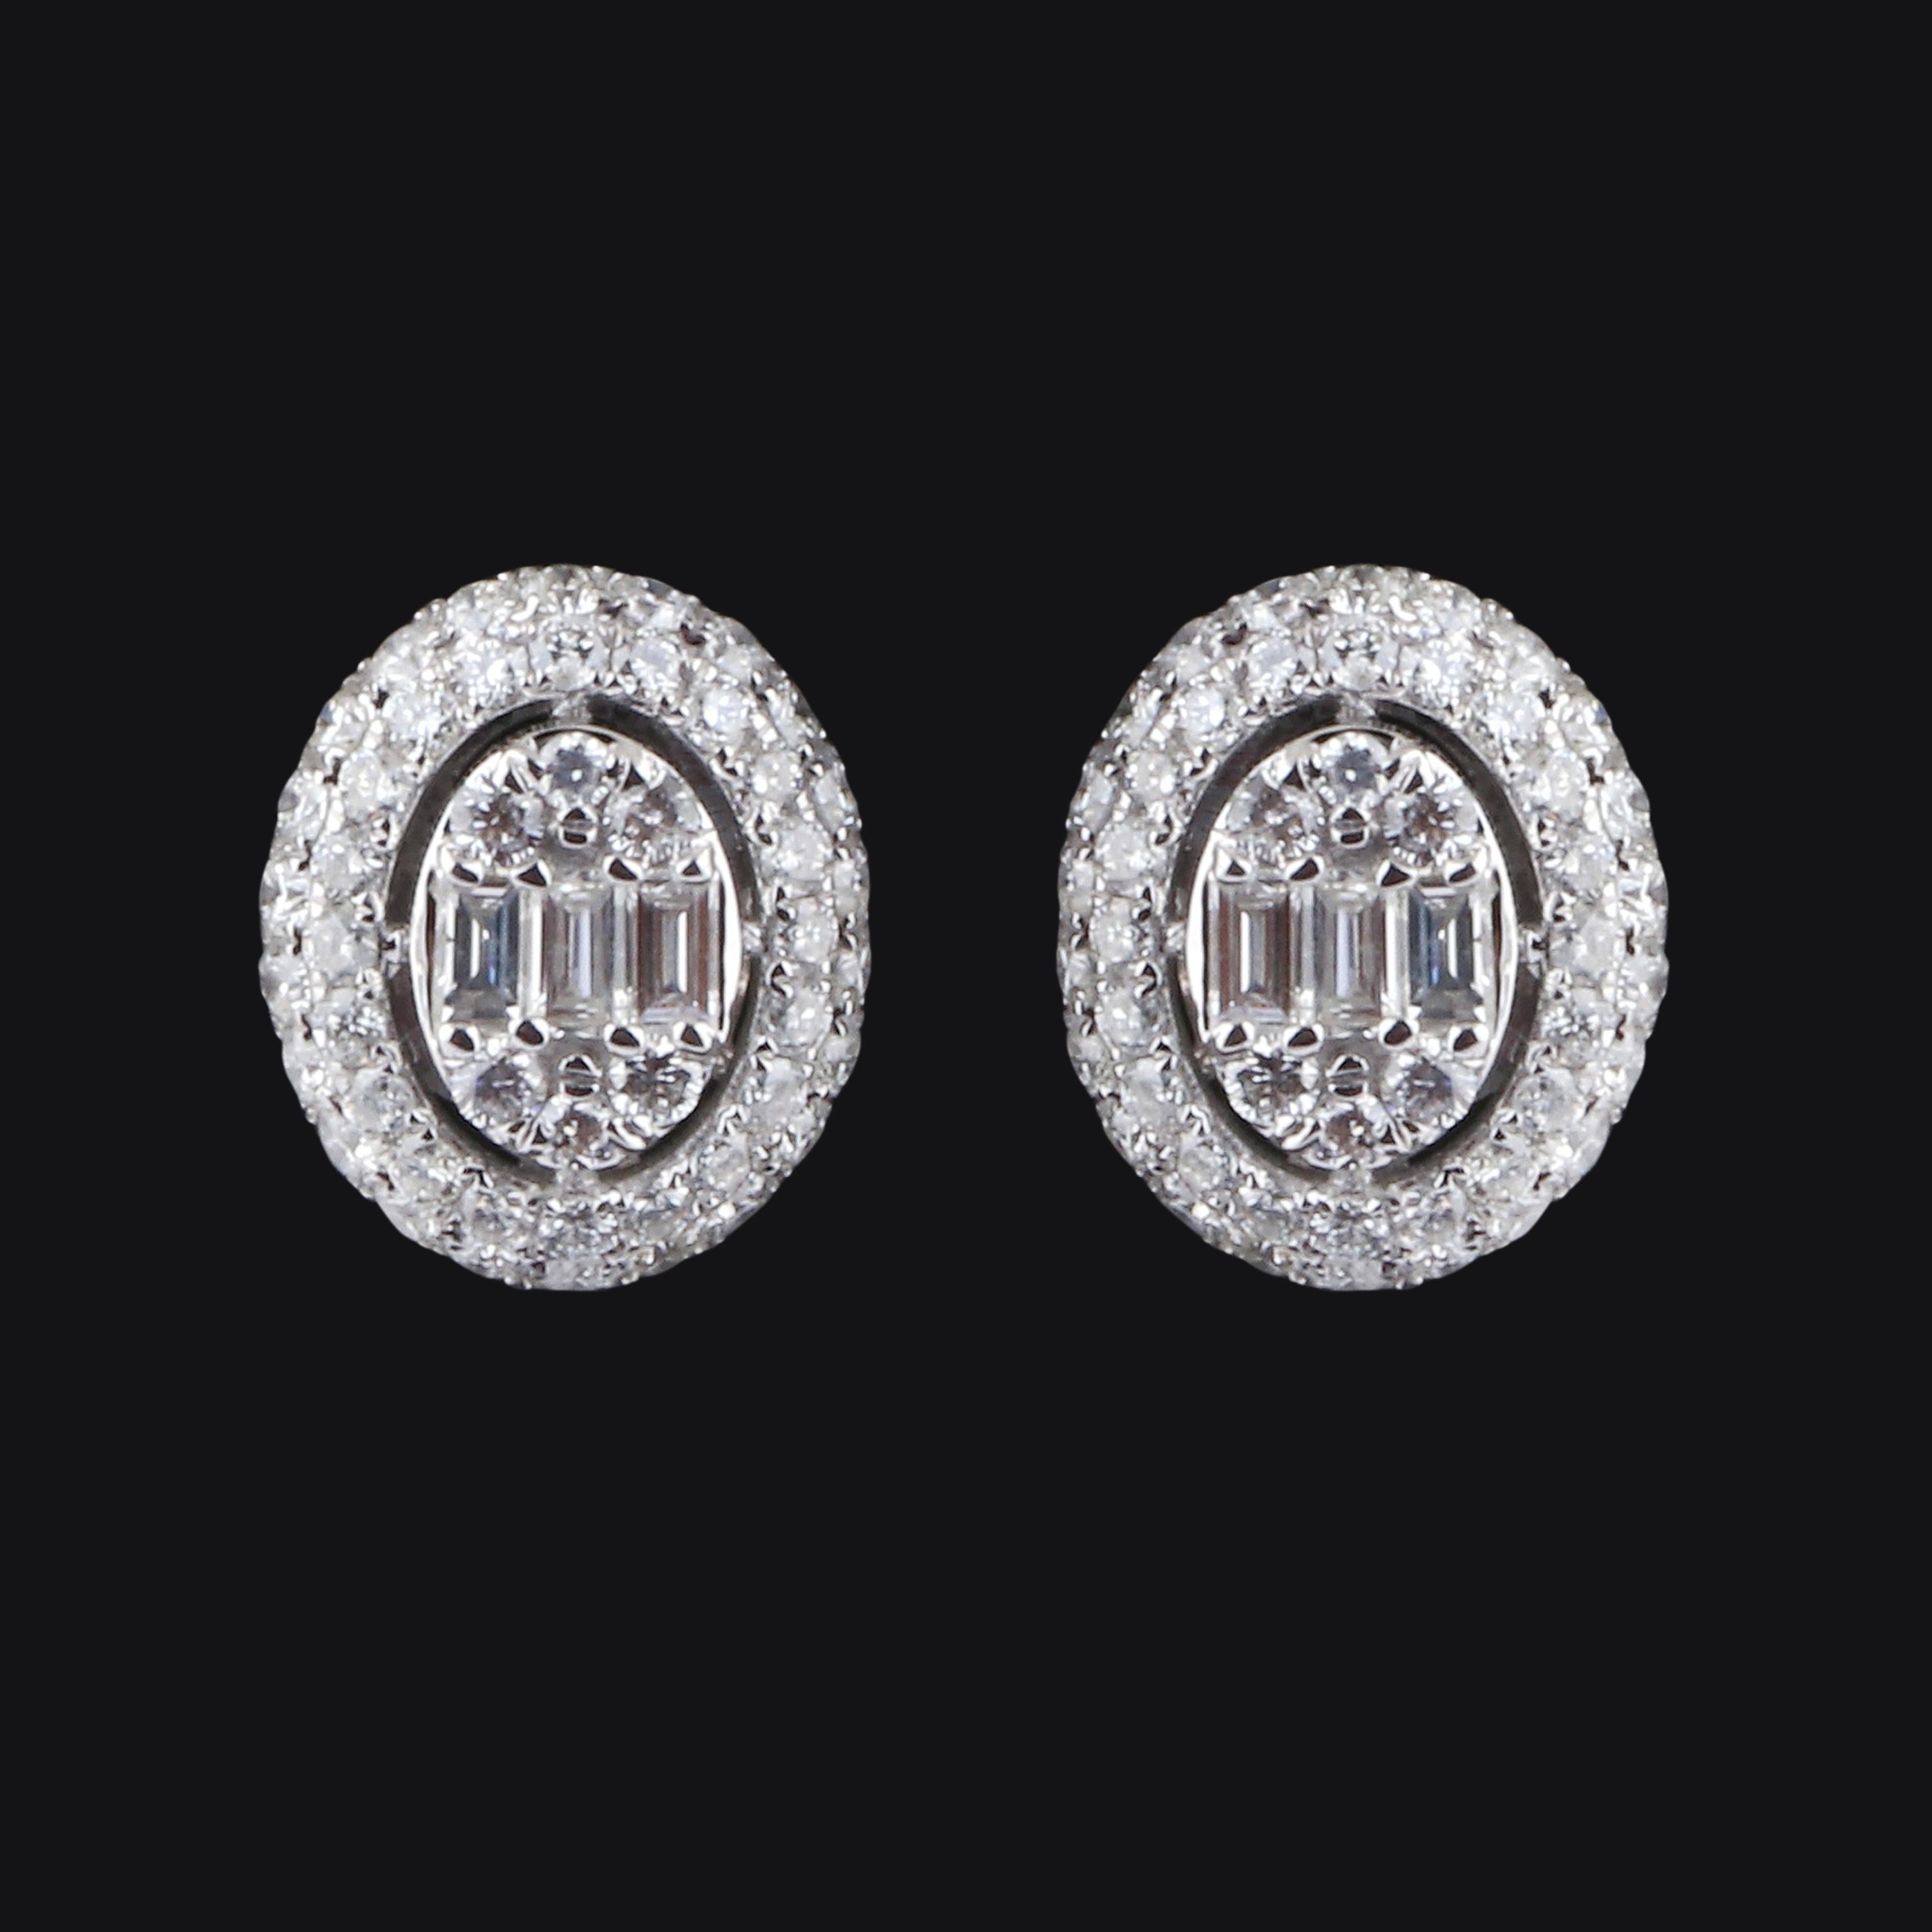 1.3 carat diamond stud earrings